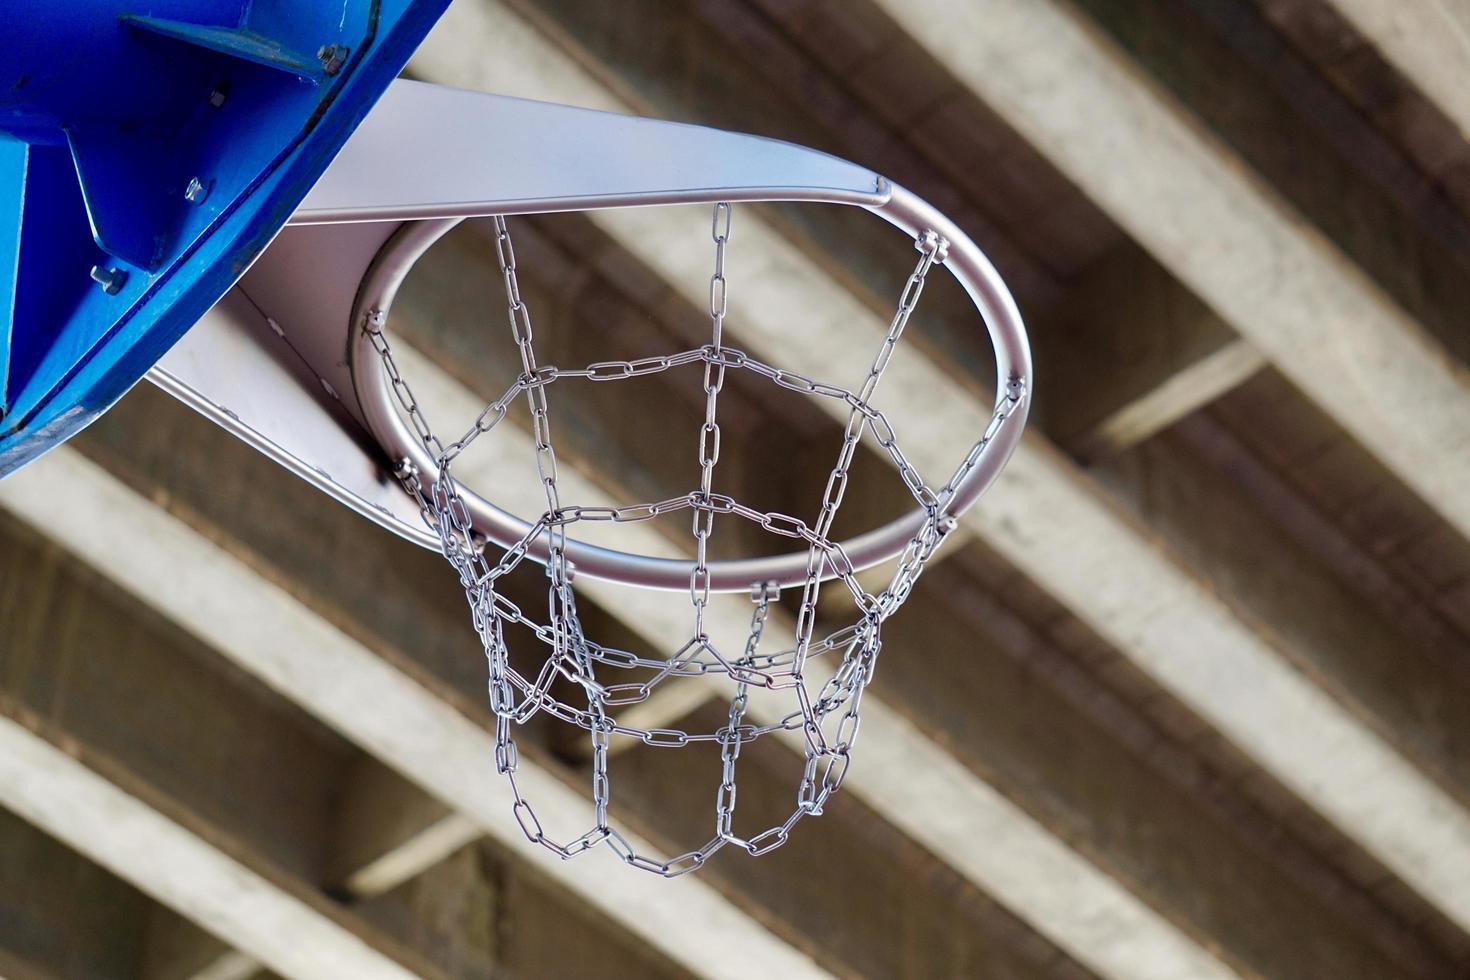 équipement sportif de basket-ball de rue photo